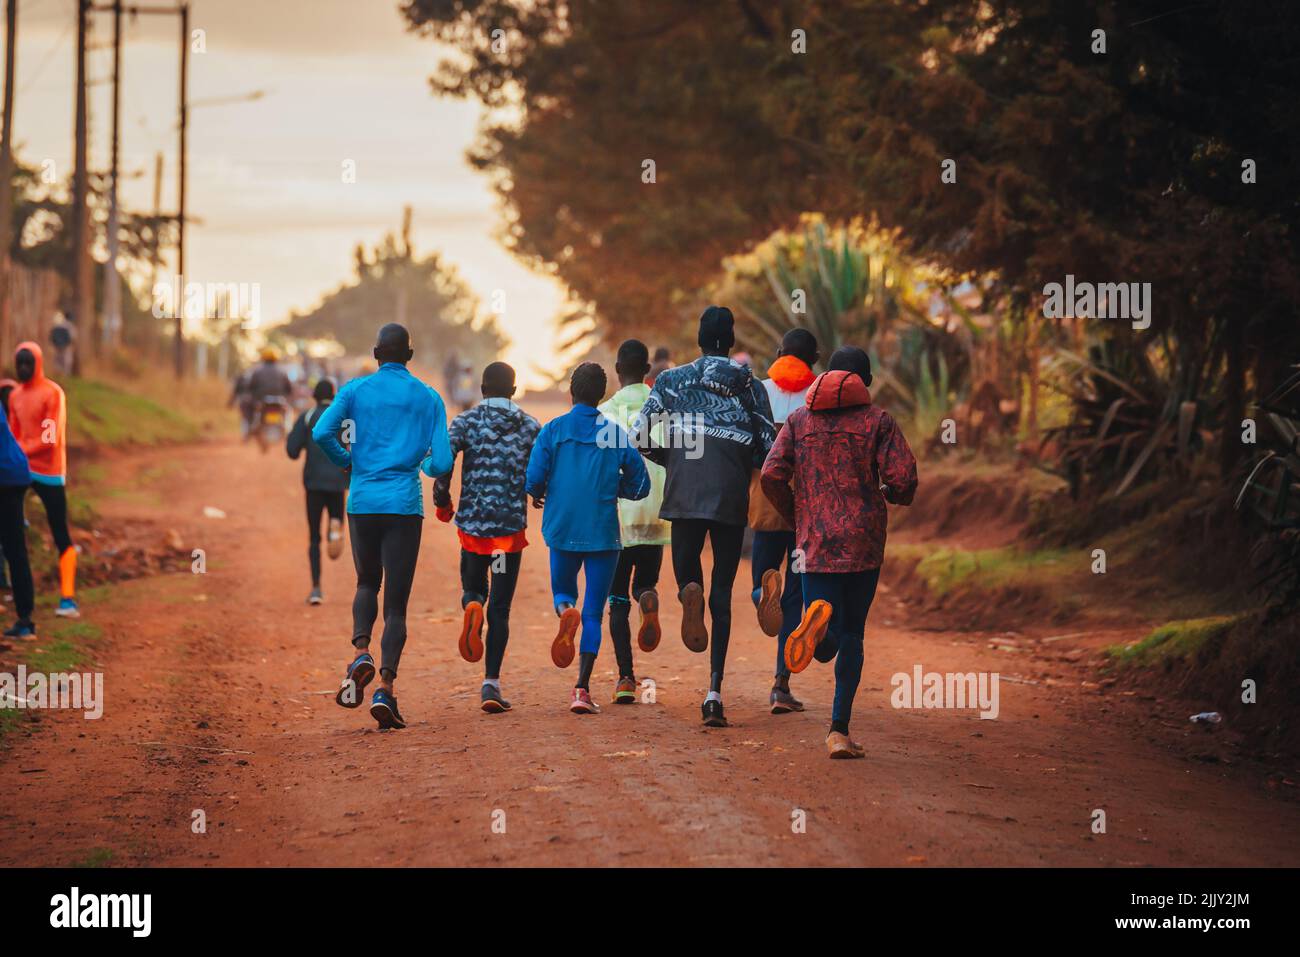 Formation de groupe au Kenya. Un grand groupe de coureurs kenyans se prépare à la course. Les coureurs professionnels d'endurance et de marathon courent sur le sol rouge o Banque D'Images